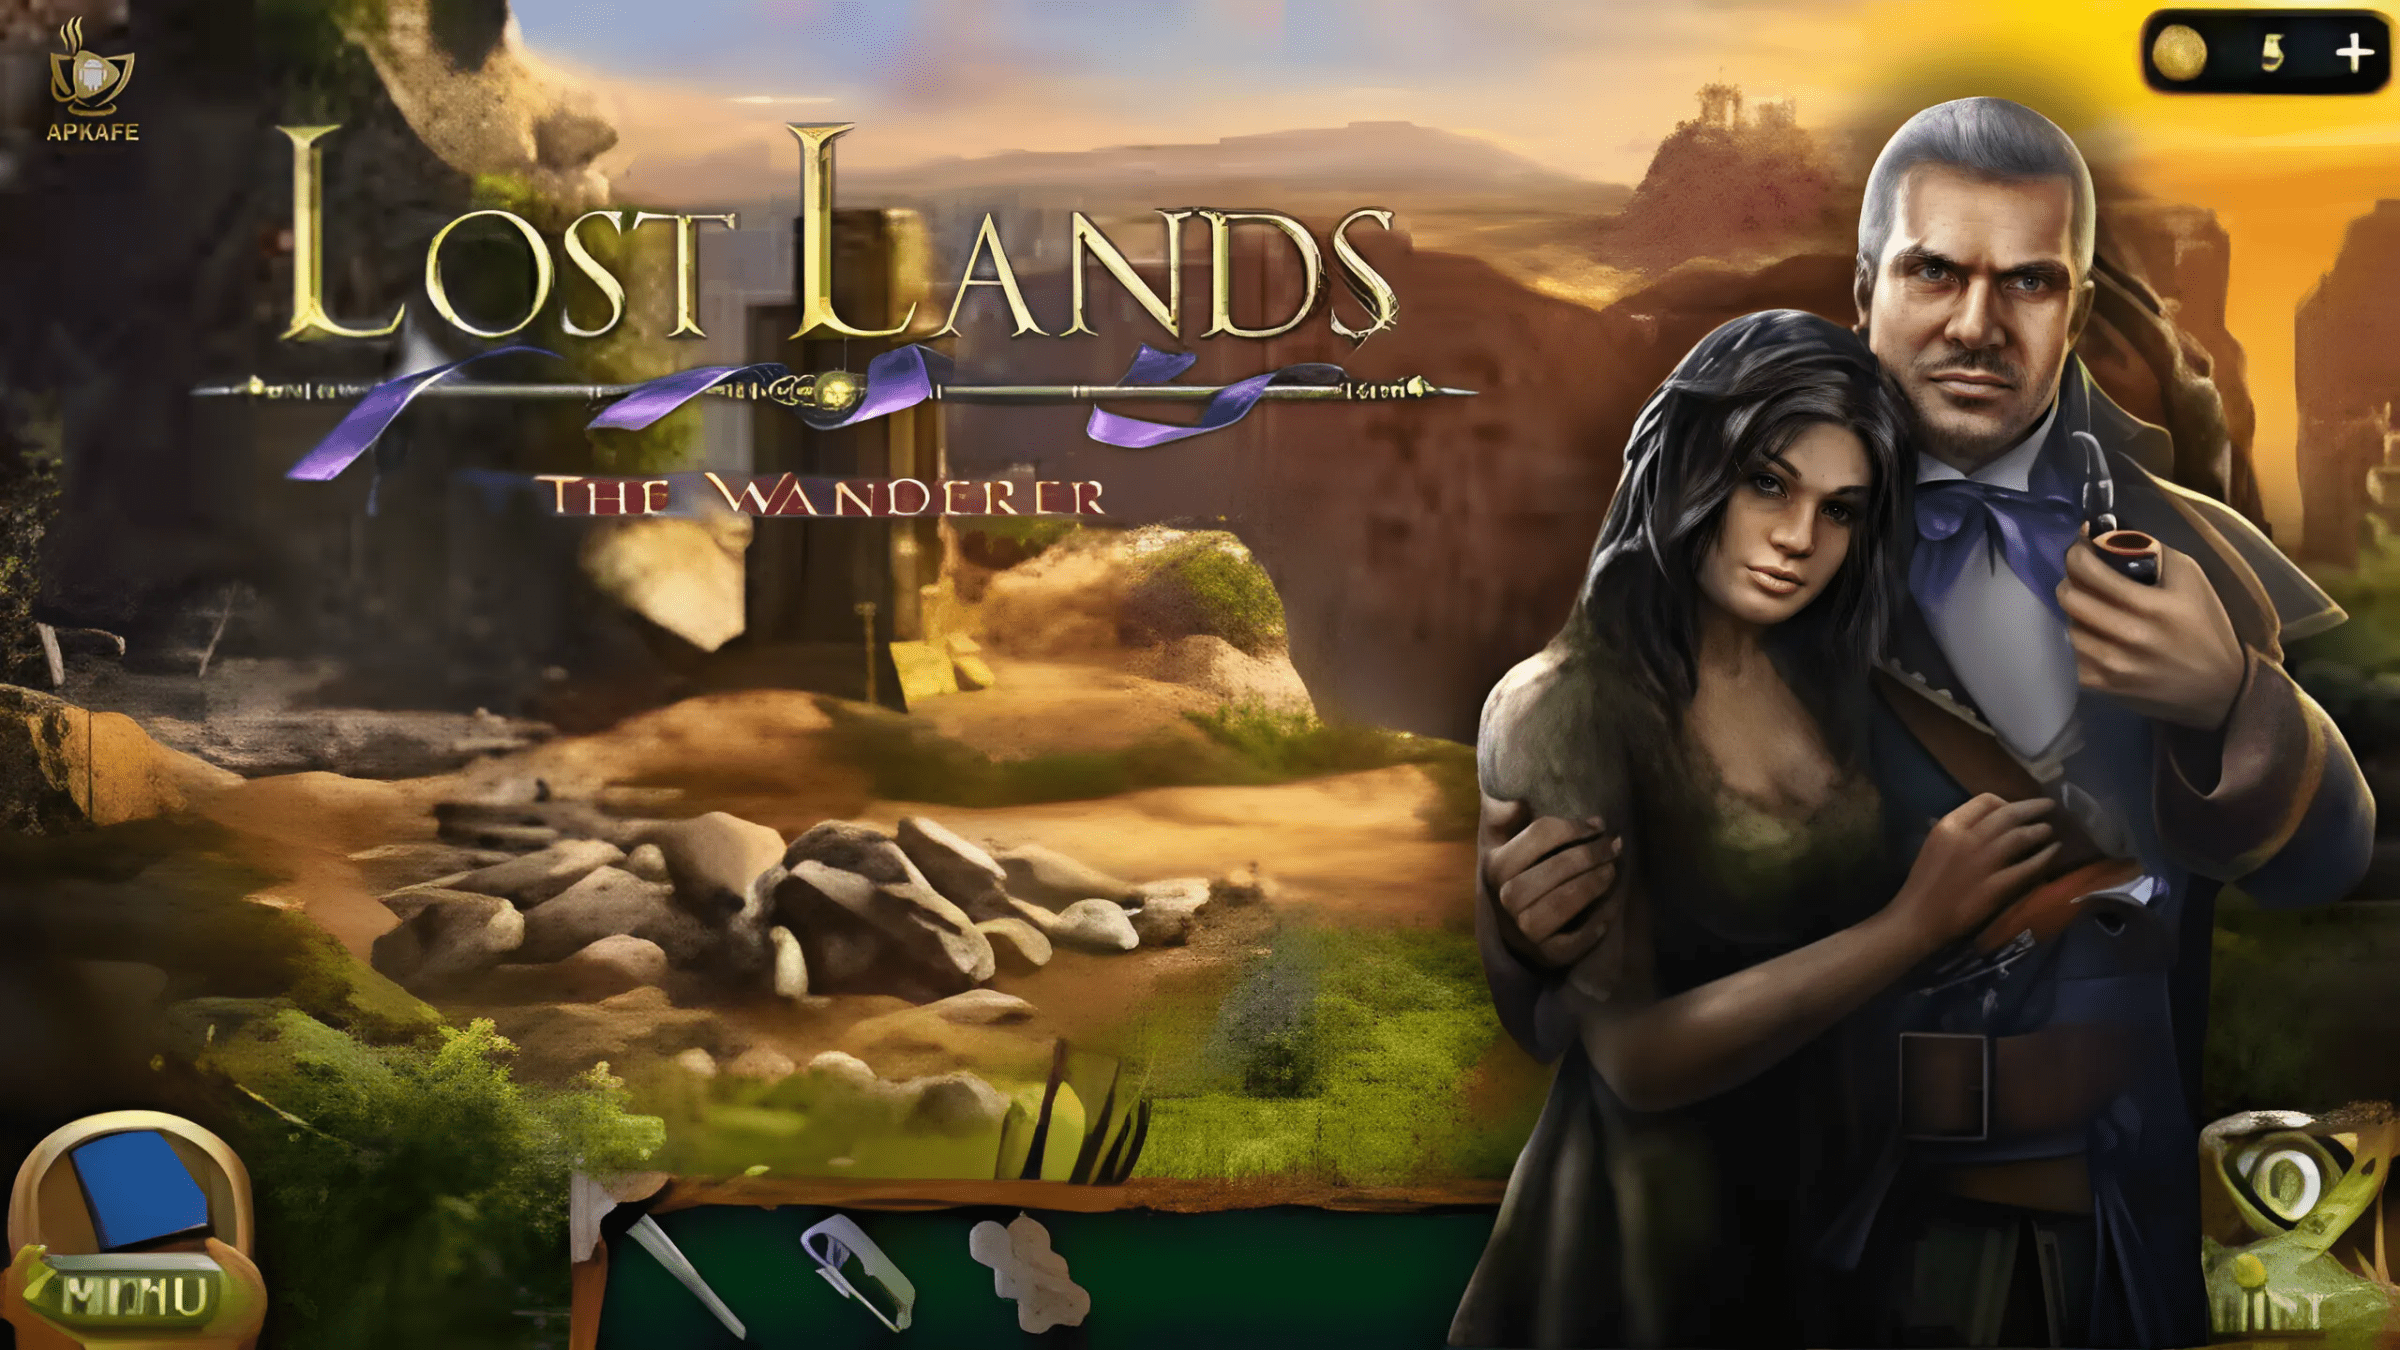 Lost land 4 - apkafe